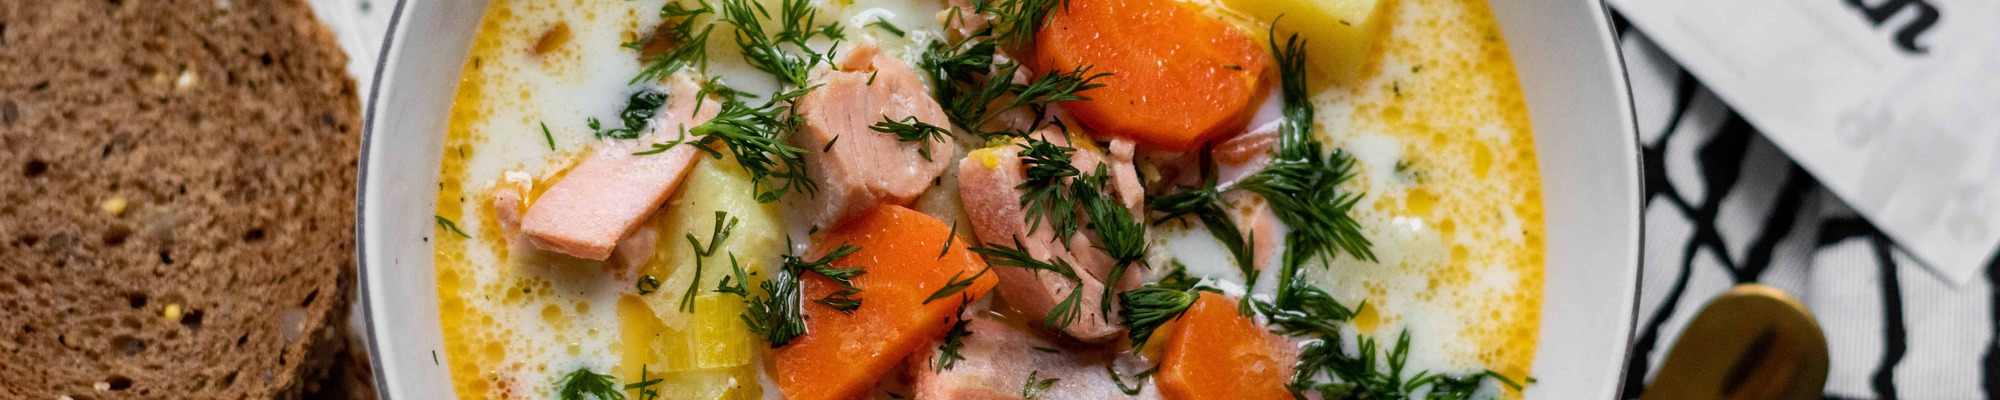 Hustá lososová polievka, ktorá pokojne zastúpi rolu hlavného jedla (Recept)